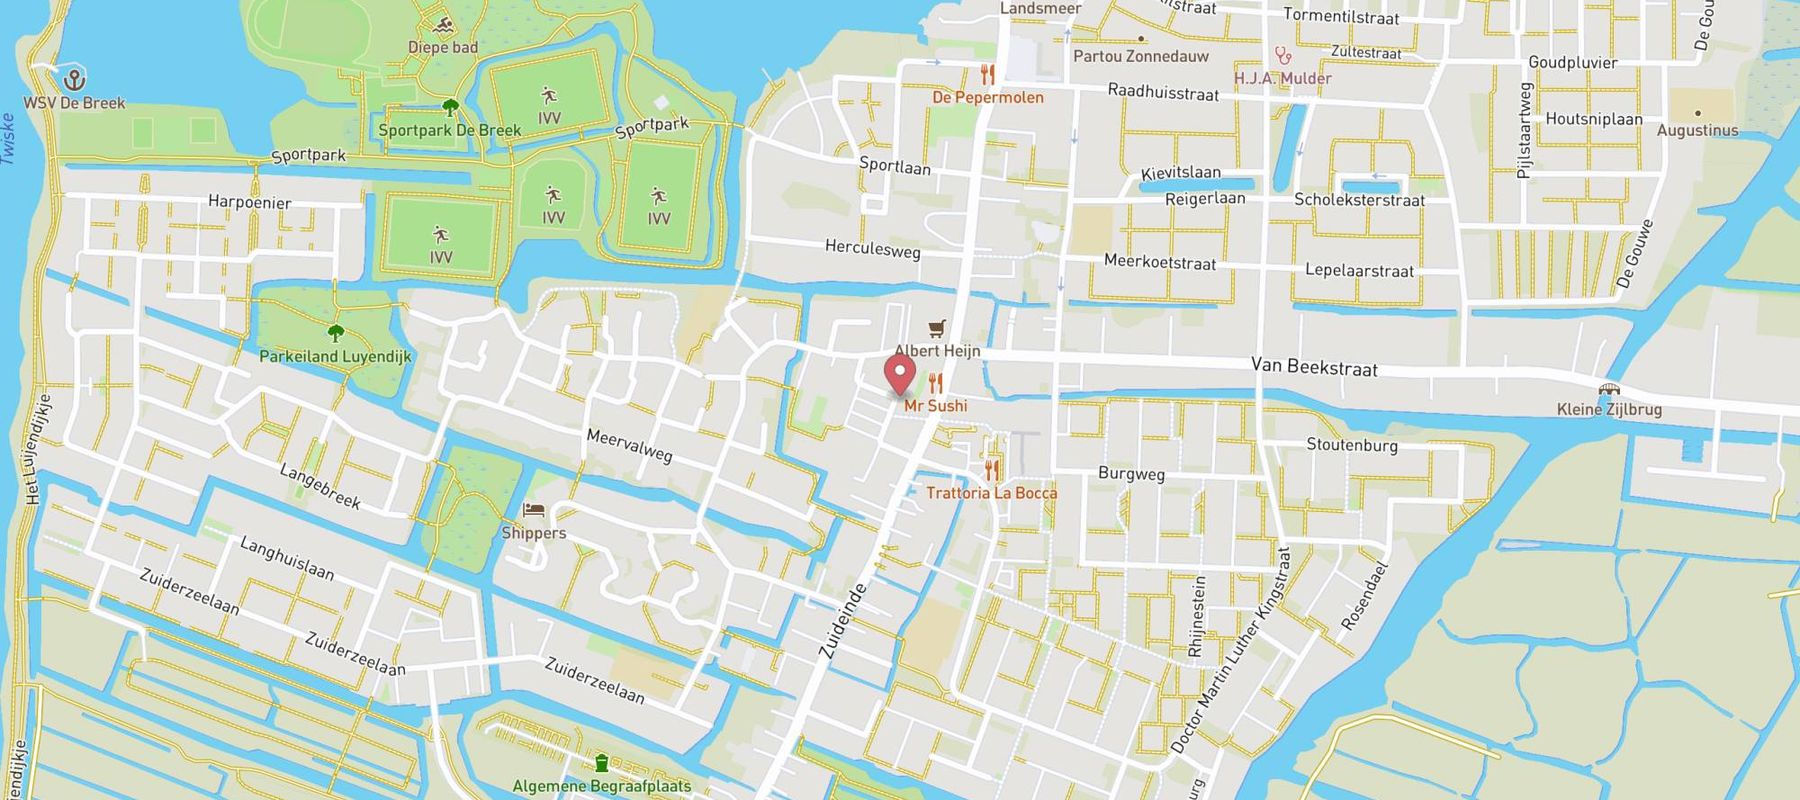 HEMA Landsmeer map